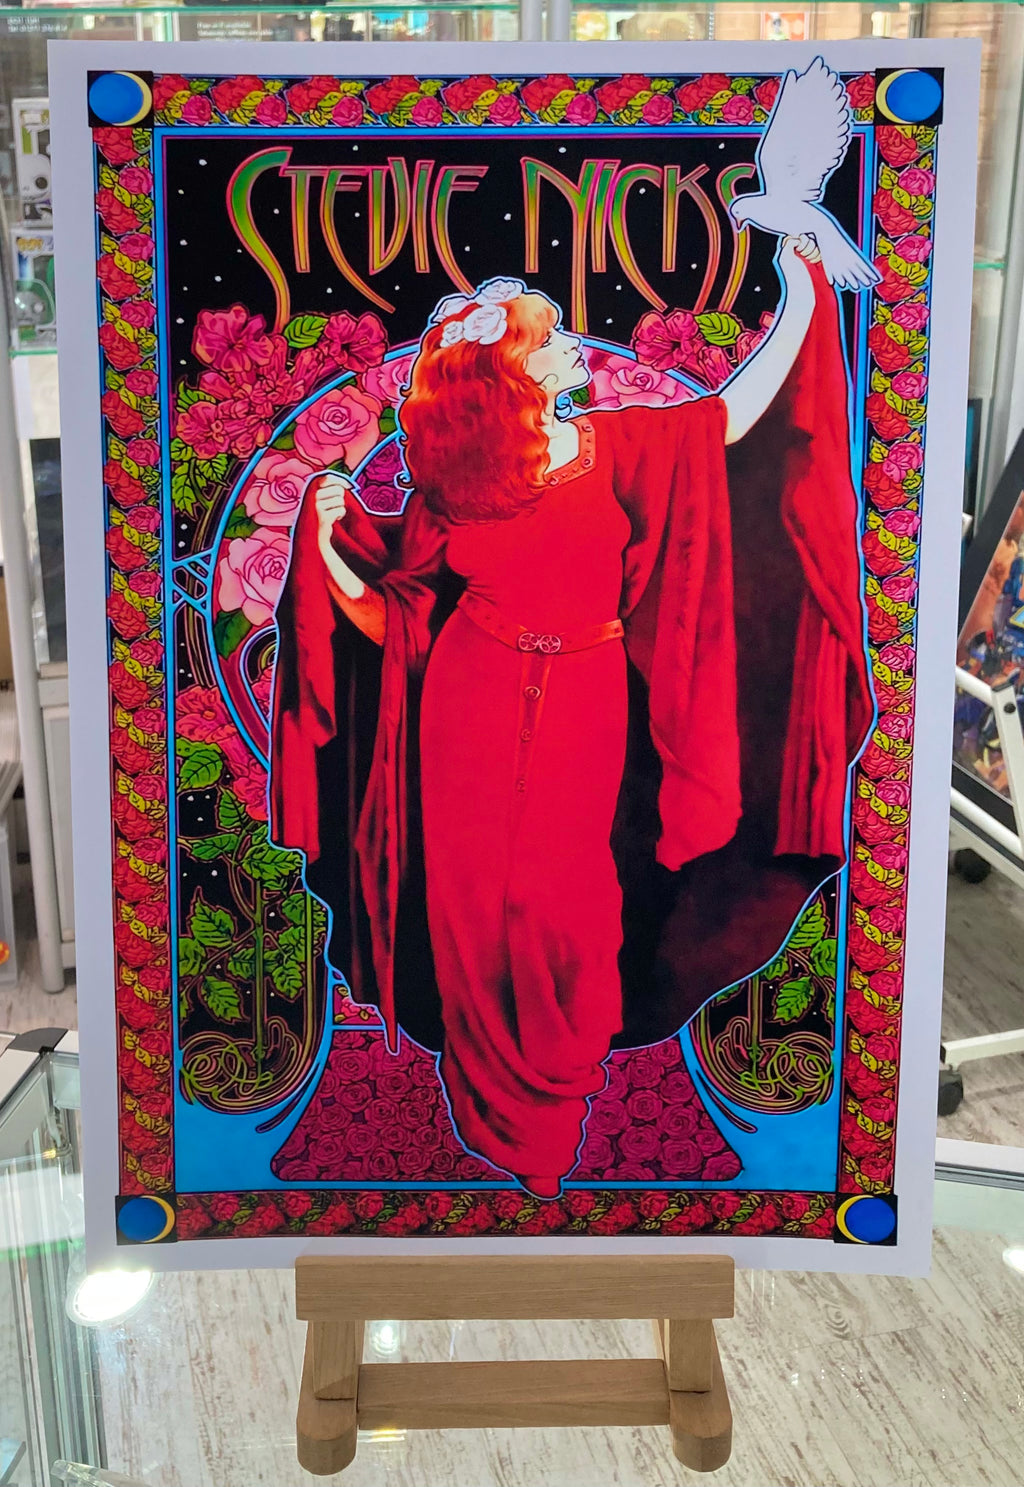 Stevie Nicks Music Art Poster